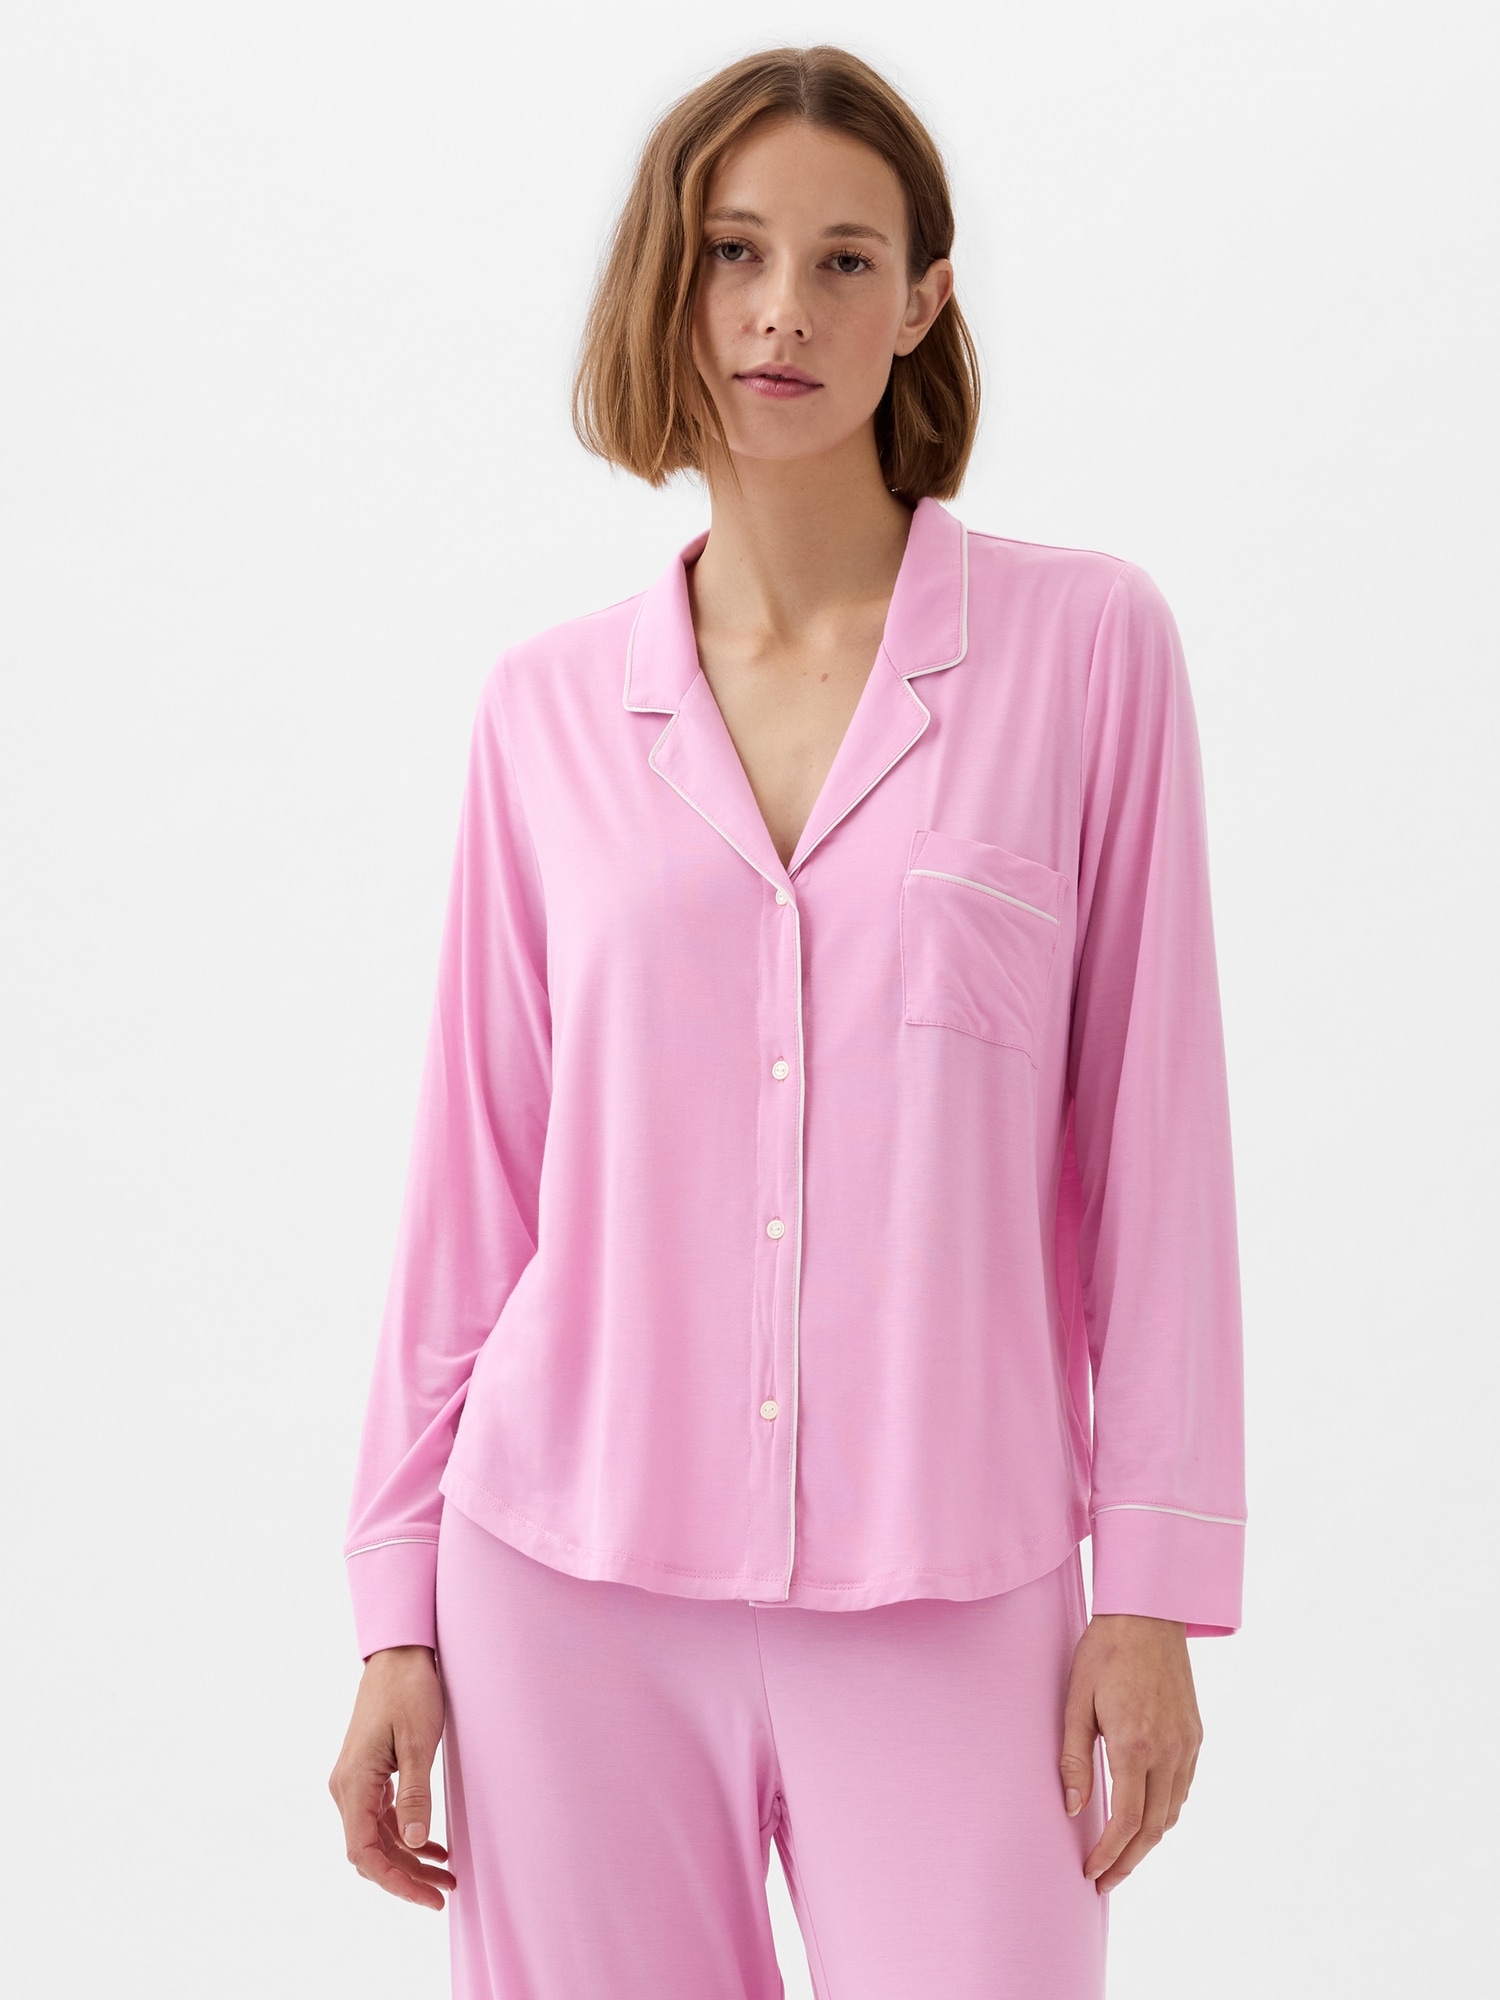 Silk Pajamas vs. Modal Pajamas